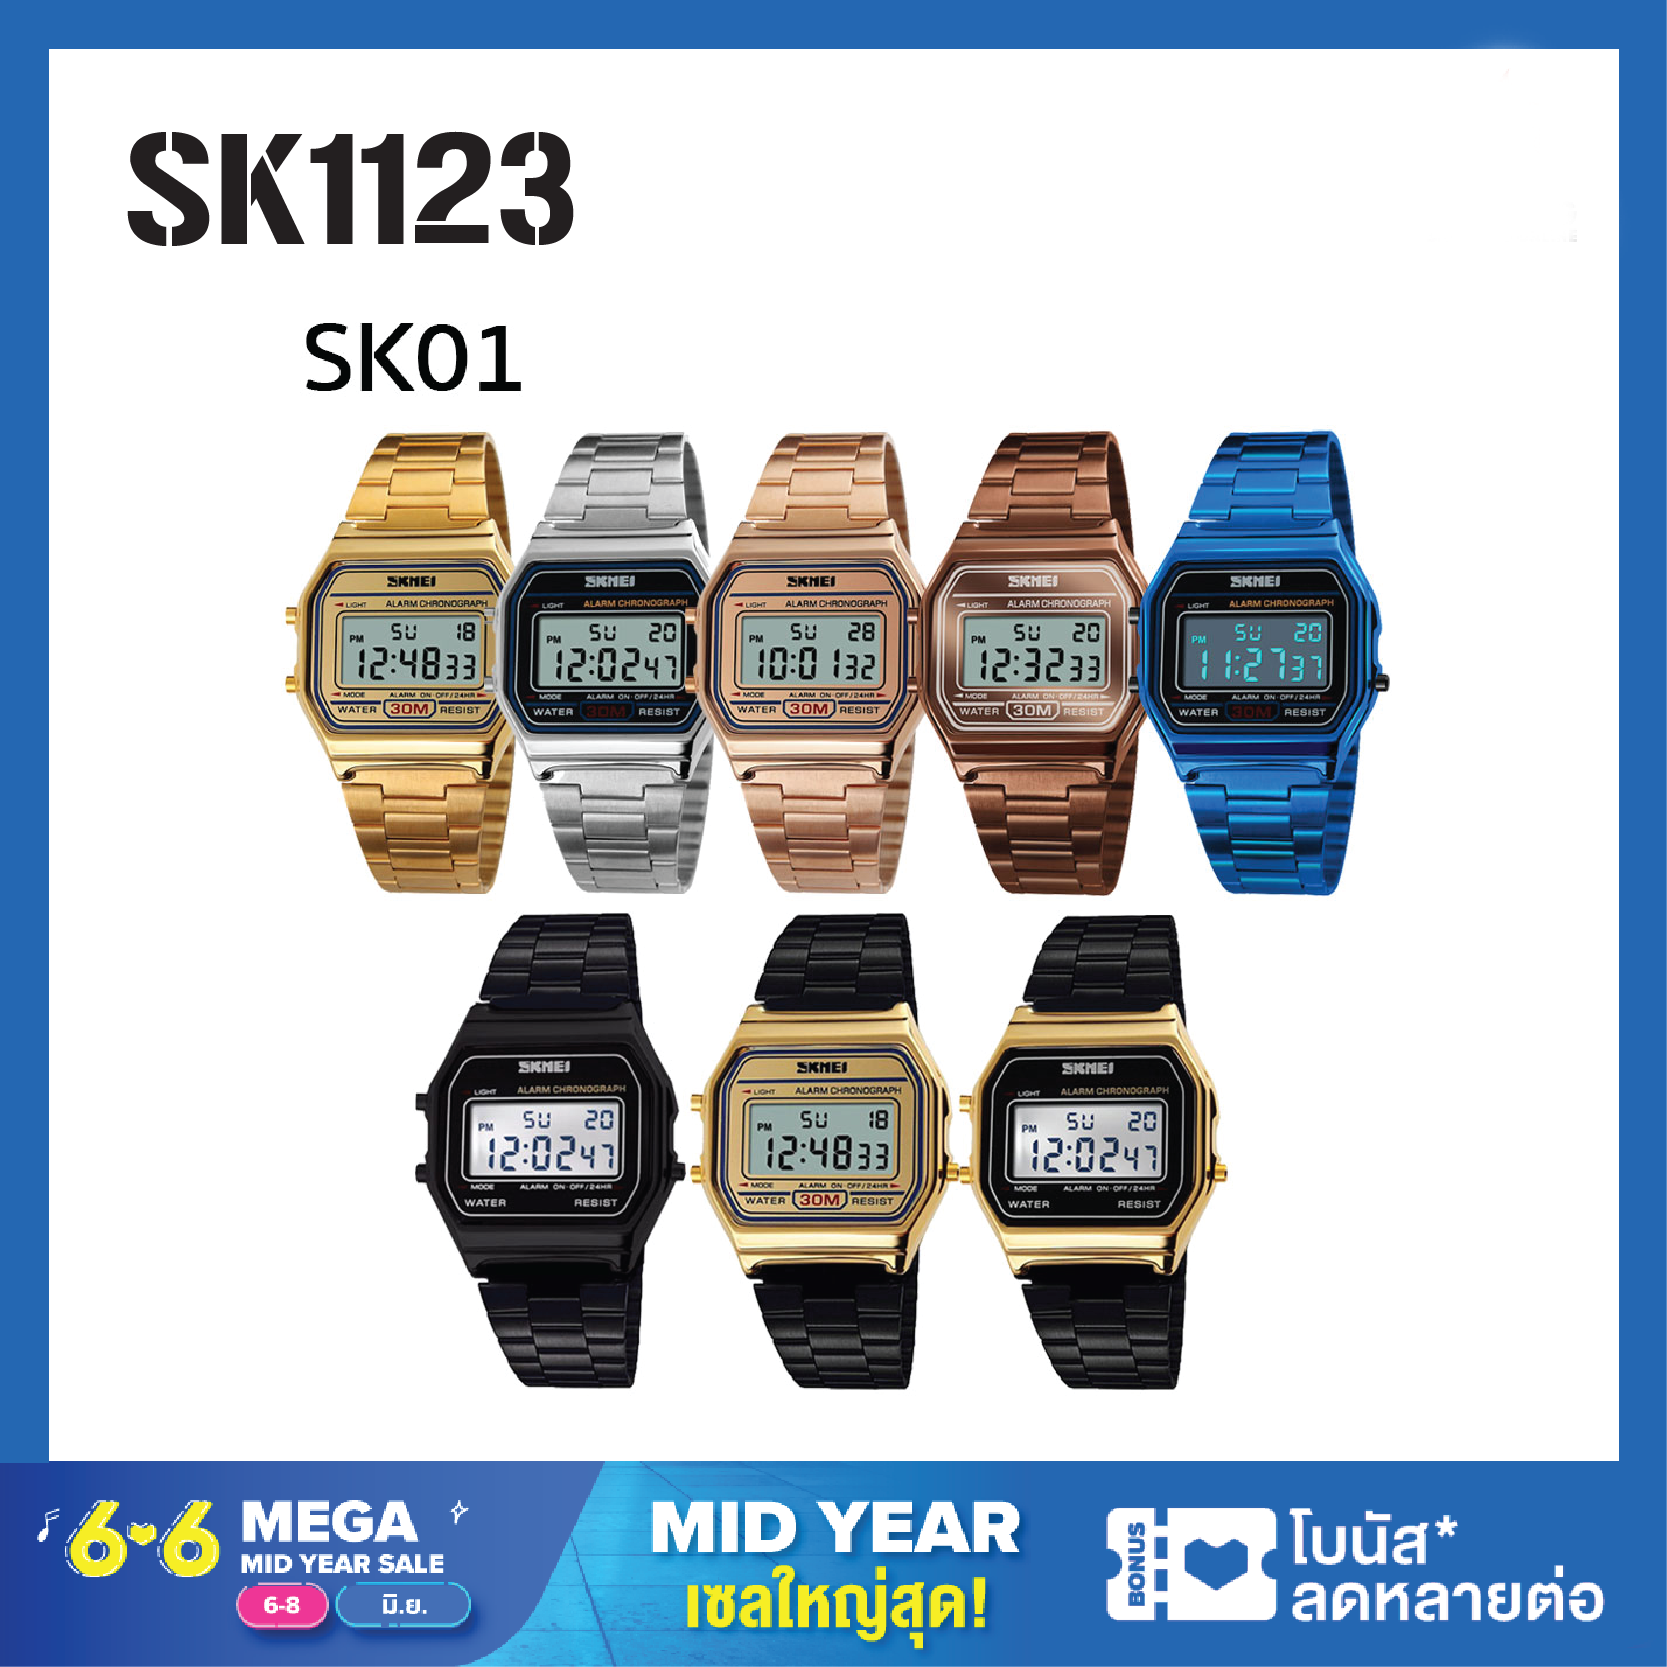 นาฬิกาลำลอง SKMEI 1123 นาฬิกาข้อมือหญิง นาฬิกาข้อมือดิจิตอล สายสแตนเลส ไฟ LED นาฬิกากันน้ำ ราคาถูก ตั้งเวลา ของแท้100% สินค้าพร้อมจัดส่ง รุ่น SKMEI01